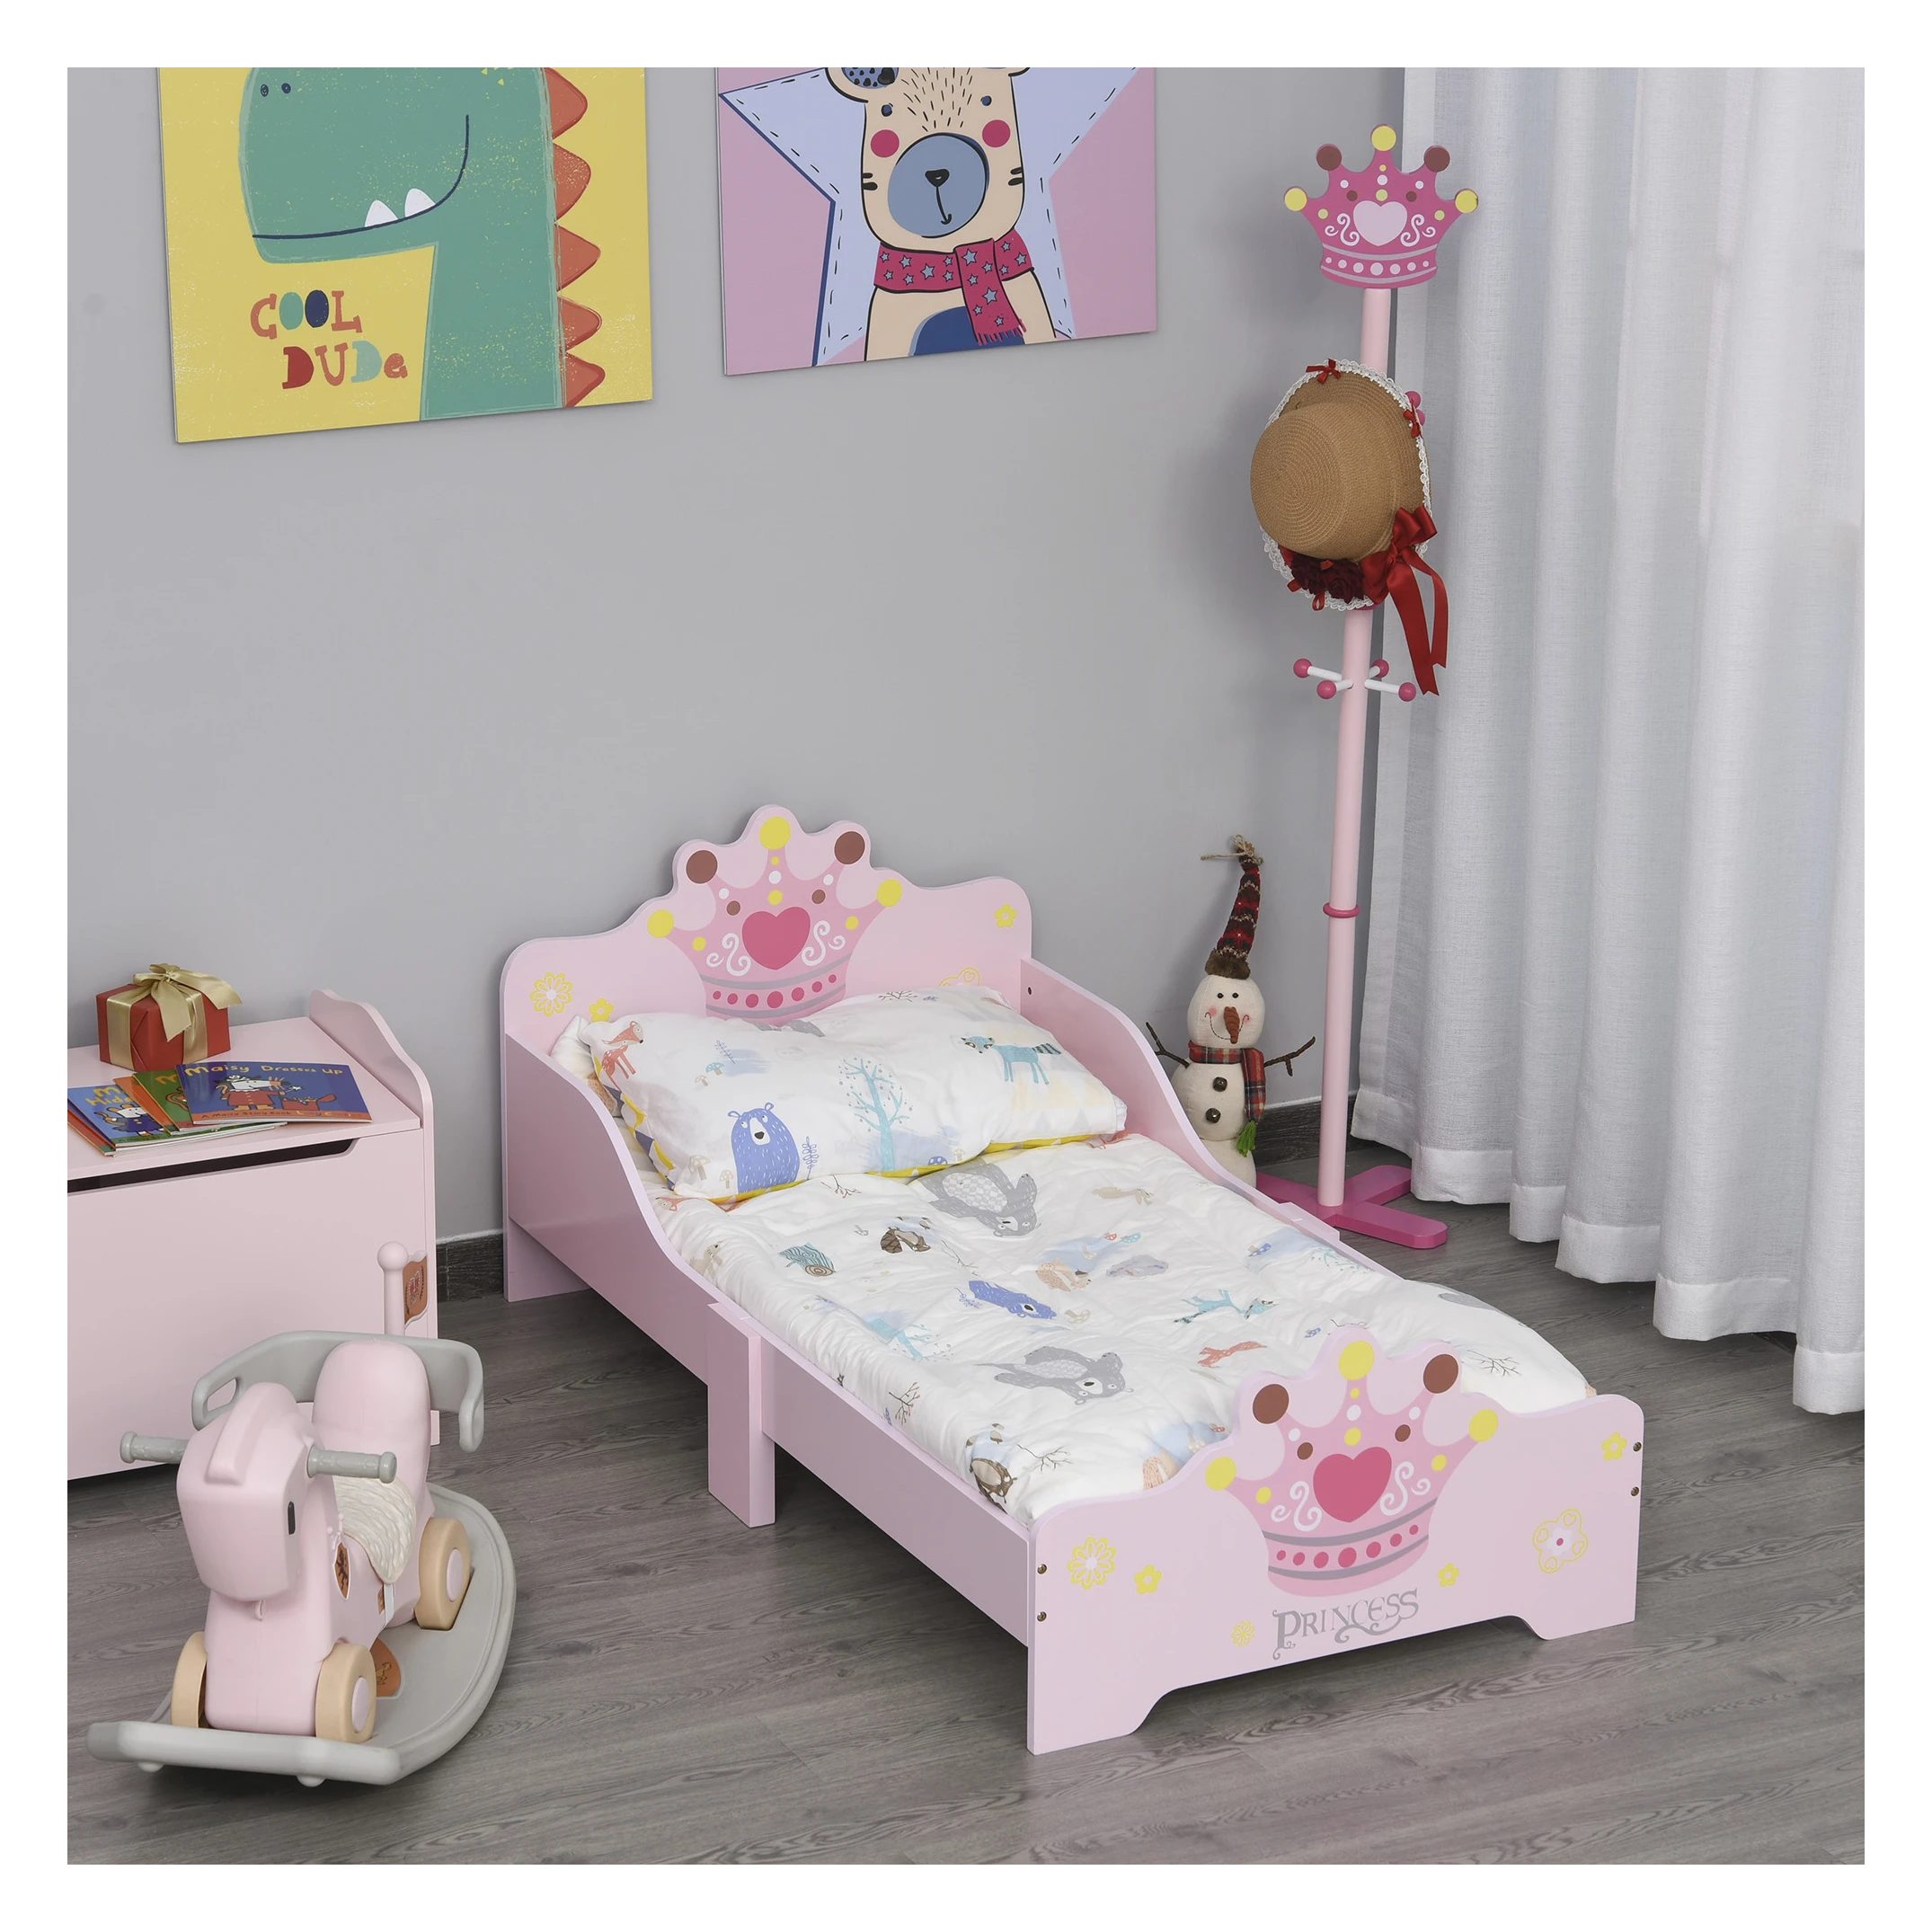 Kinderbed met prinsessenmotief met valbeveiliging 3-6 jaar, meisjesbed, houten bed voor kinderkamer, populierenhout, 143 x 73 60 - SimpleDeal.nl